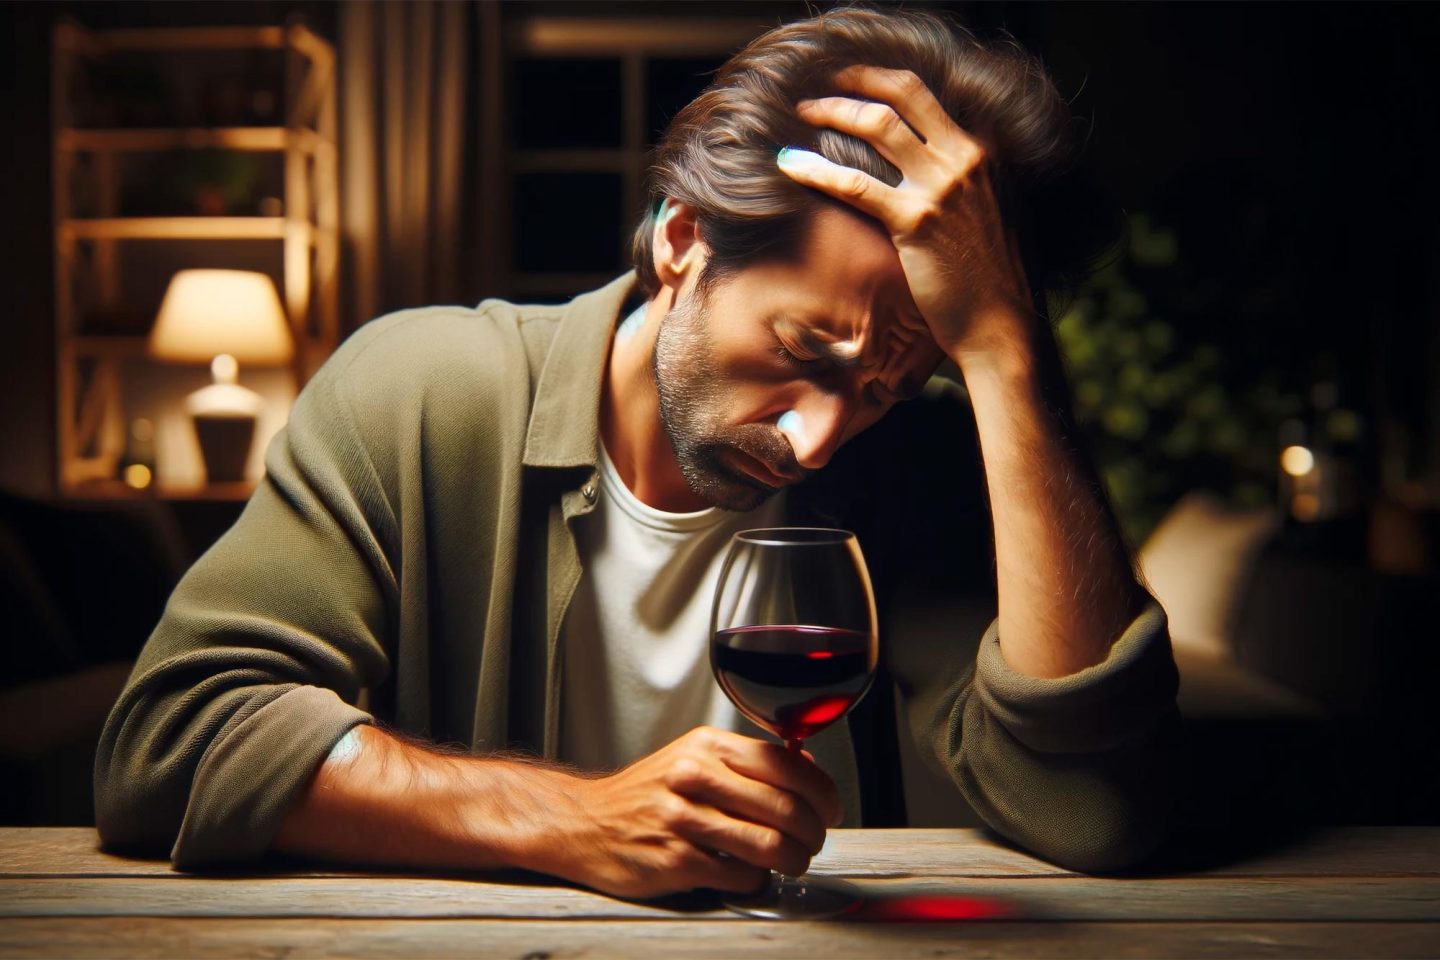 لماذا نُصاب بصداع بعد شرب النبيذ الأحمر؟